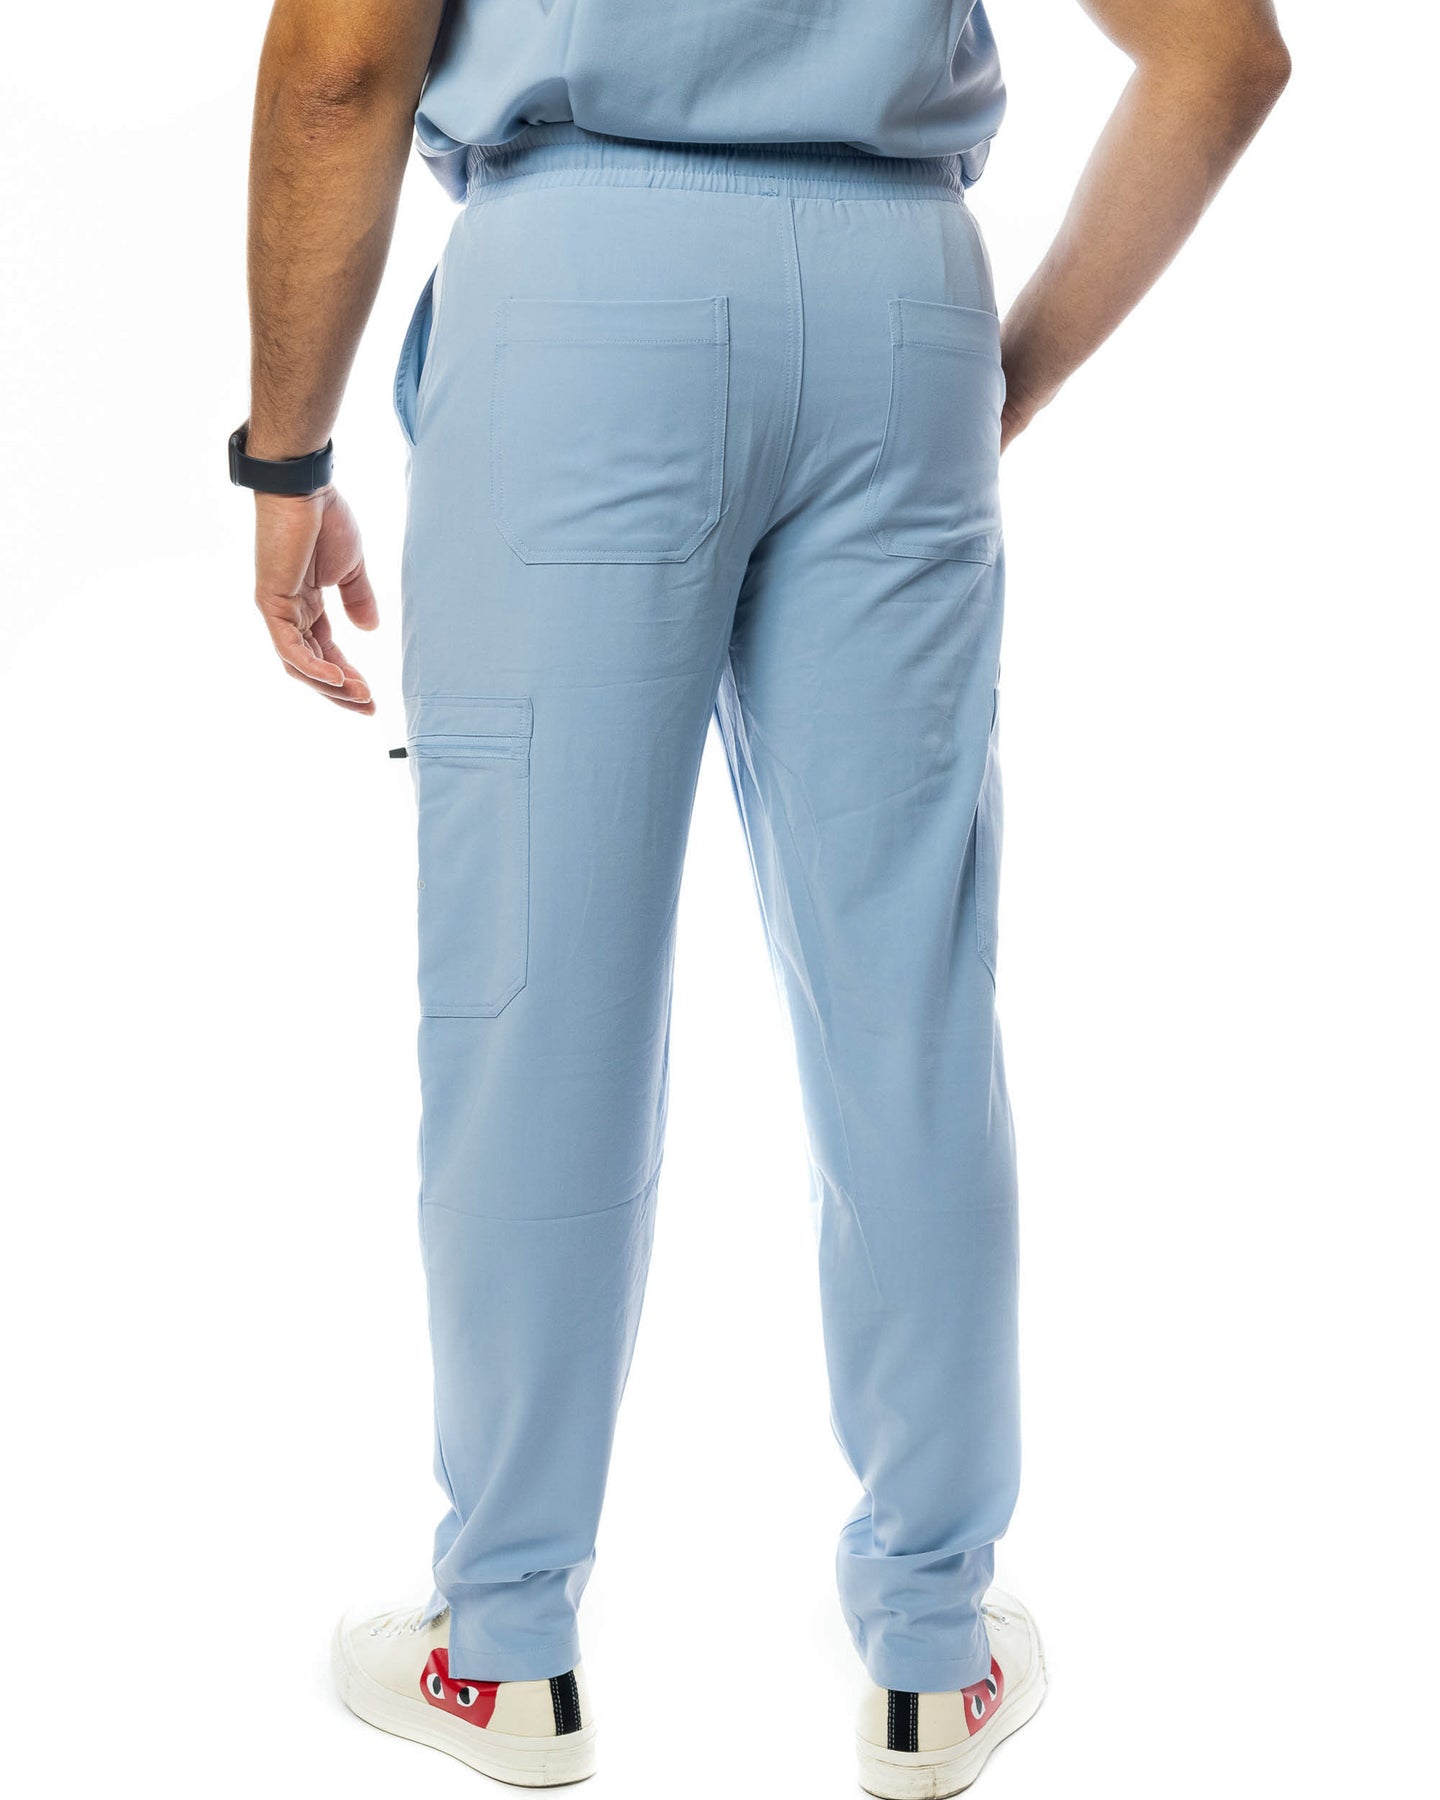 Men's Classic Scrub Pants – Mim Scrubs - Millennials In Medicine